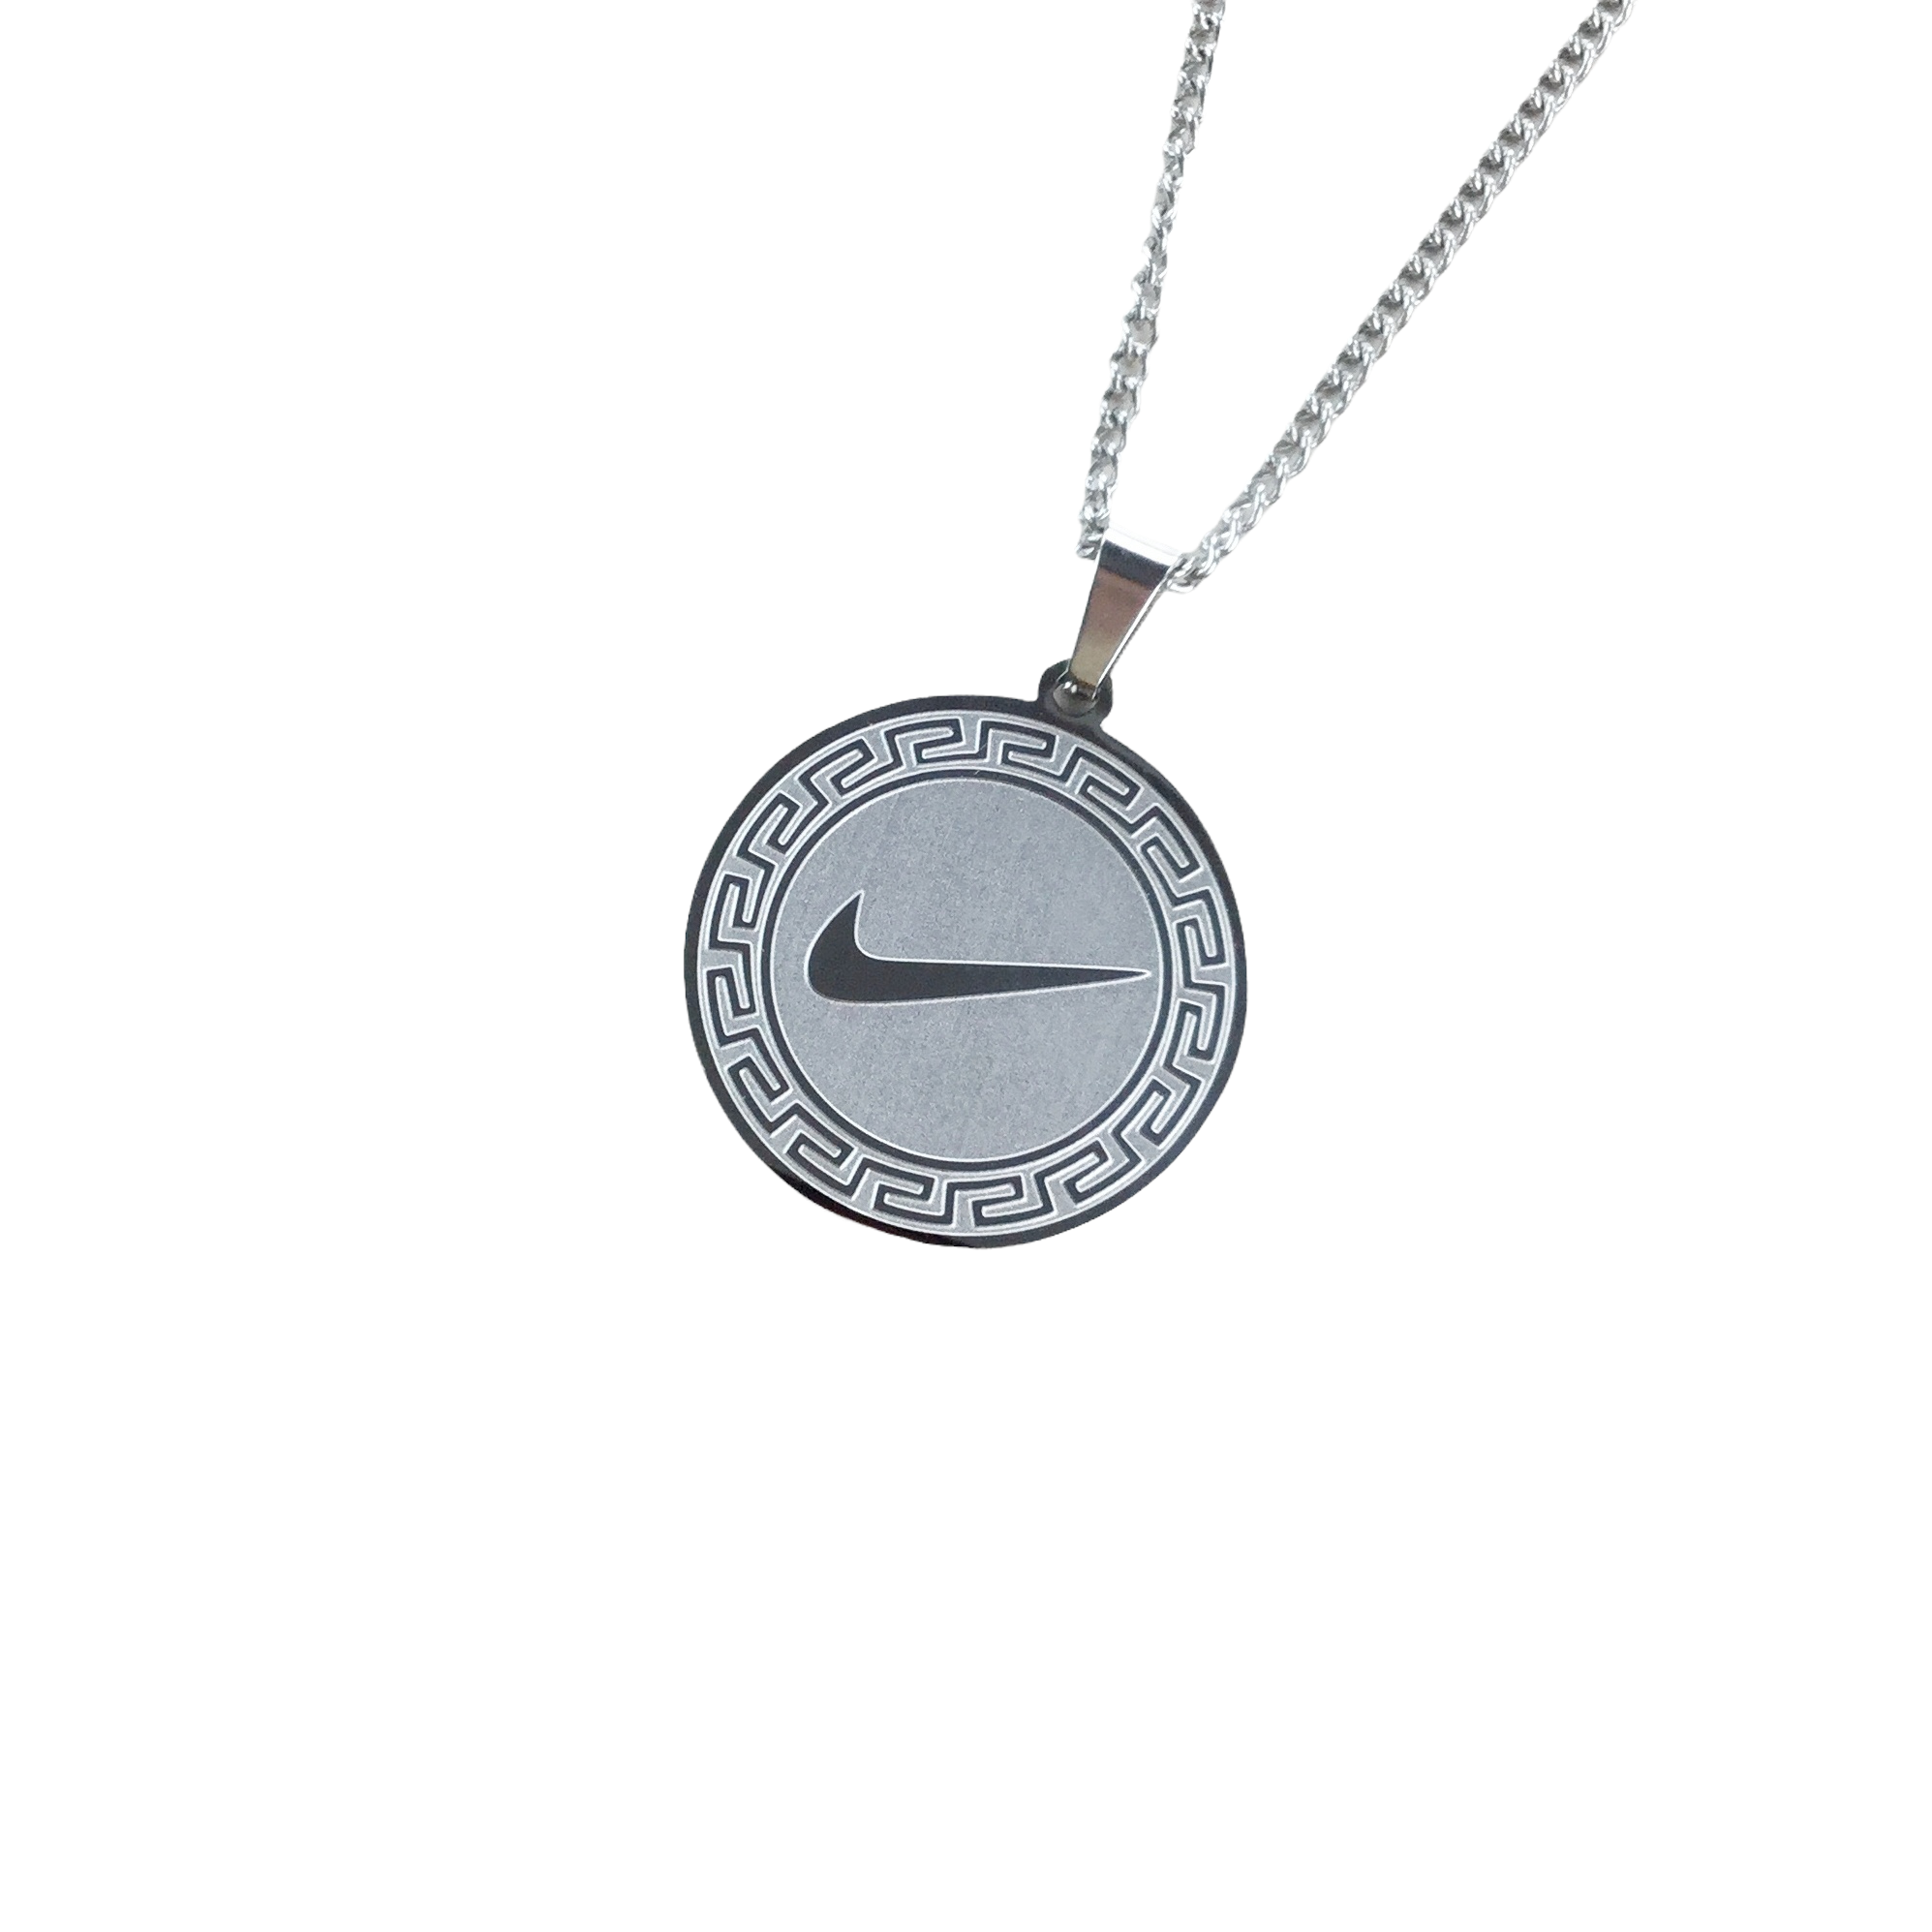 Nike Chain - Silver  Silver, Chain, Cheap chains